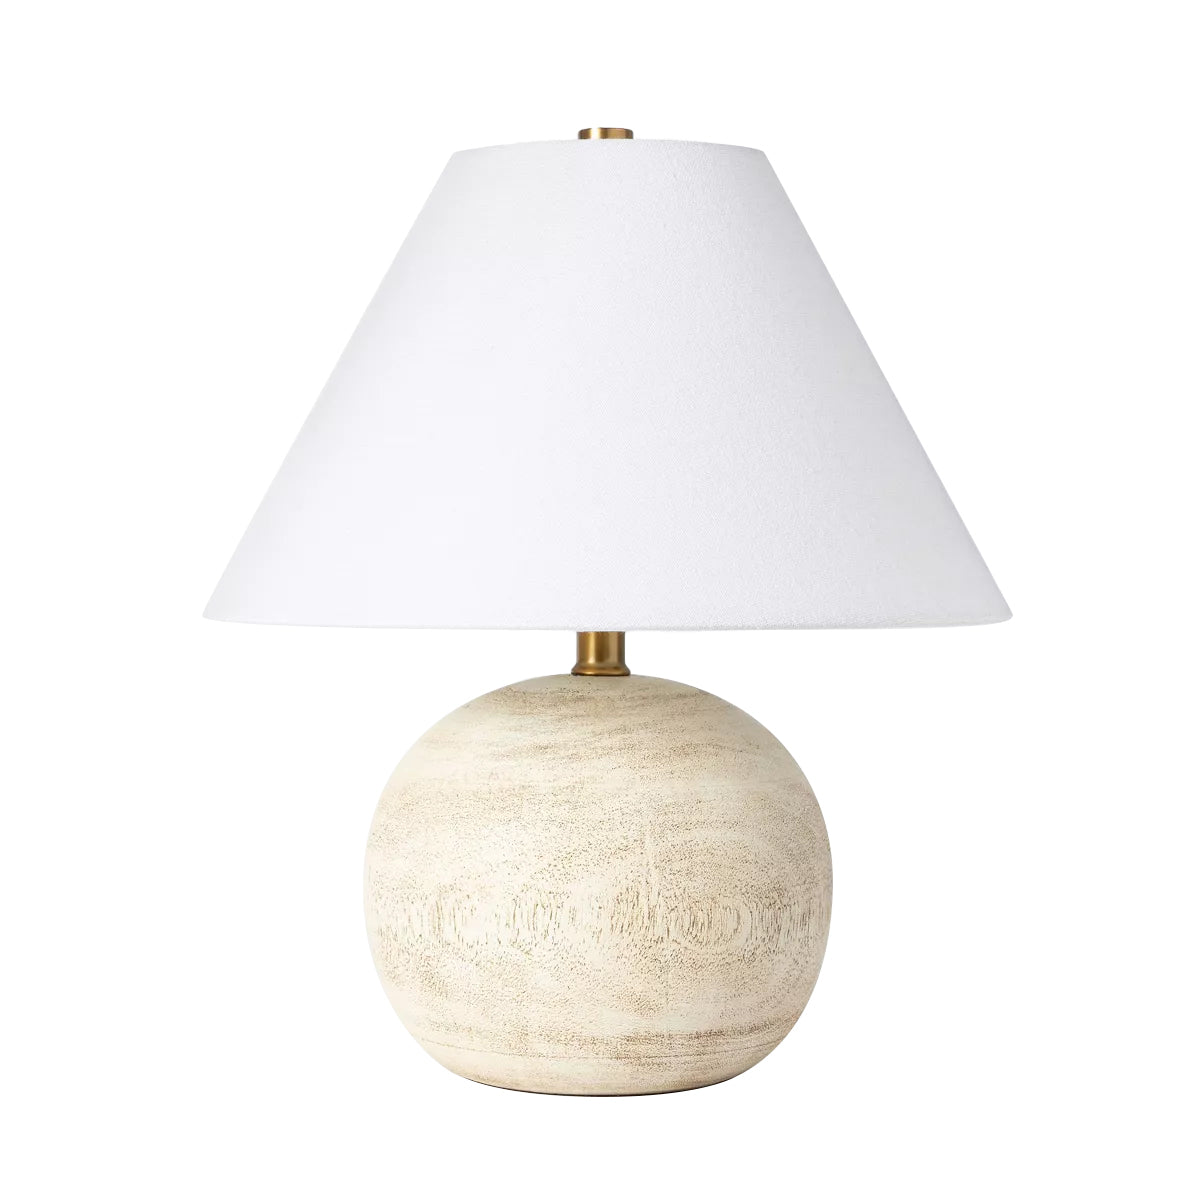 Medium Faux Wood Table Lamp Brown